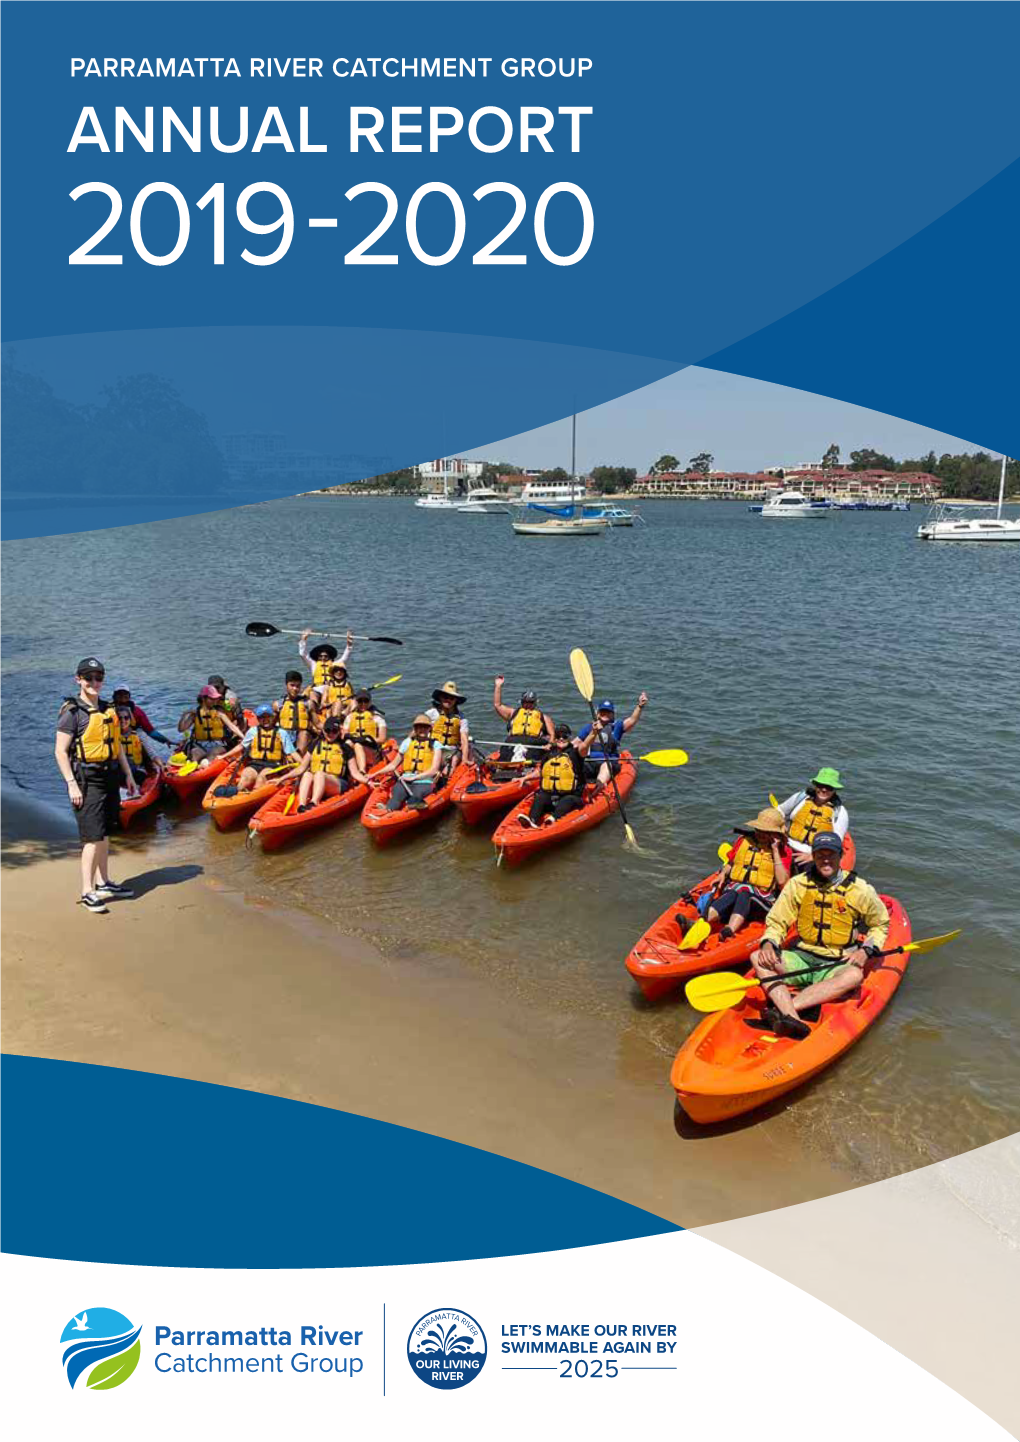 PRCG Annual Report 2019-20